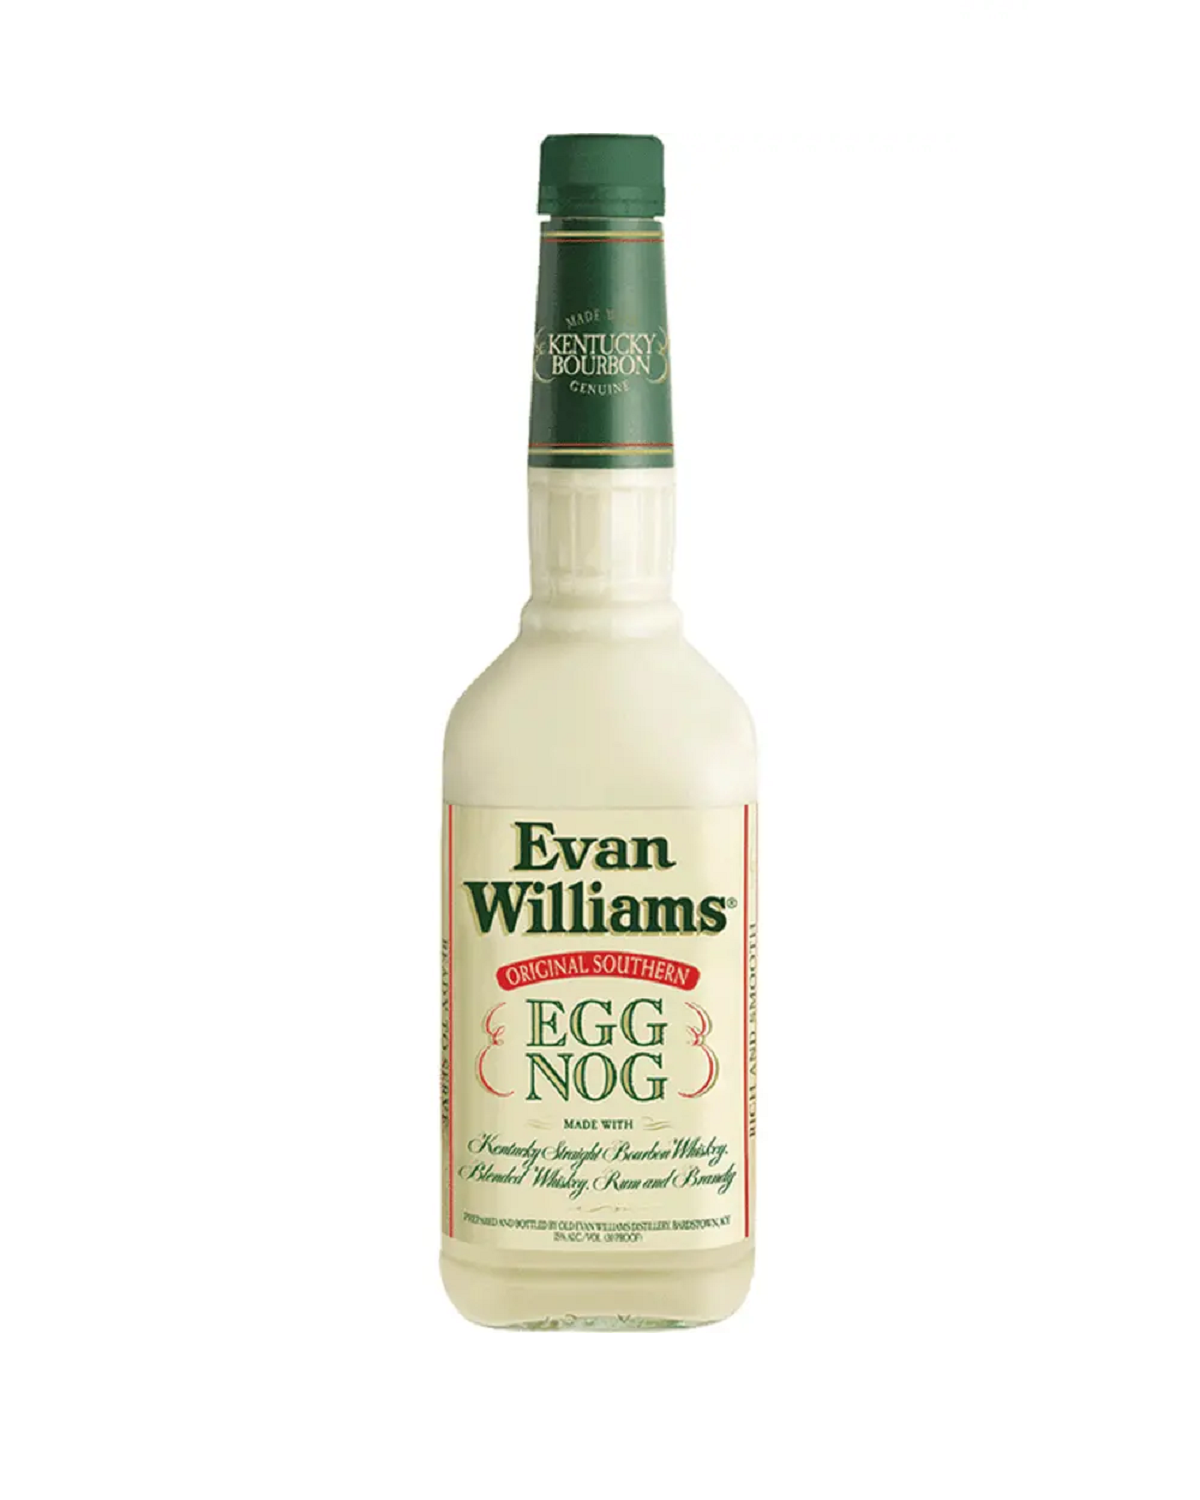 Evan Williams Eggnog